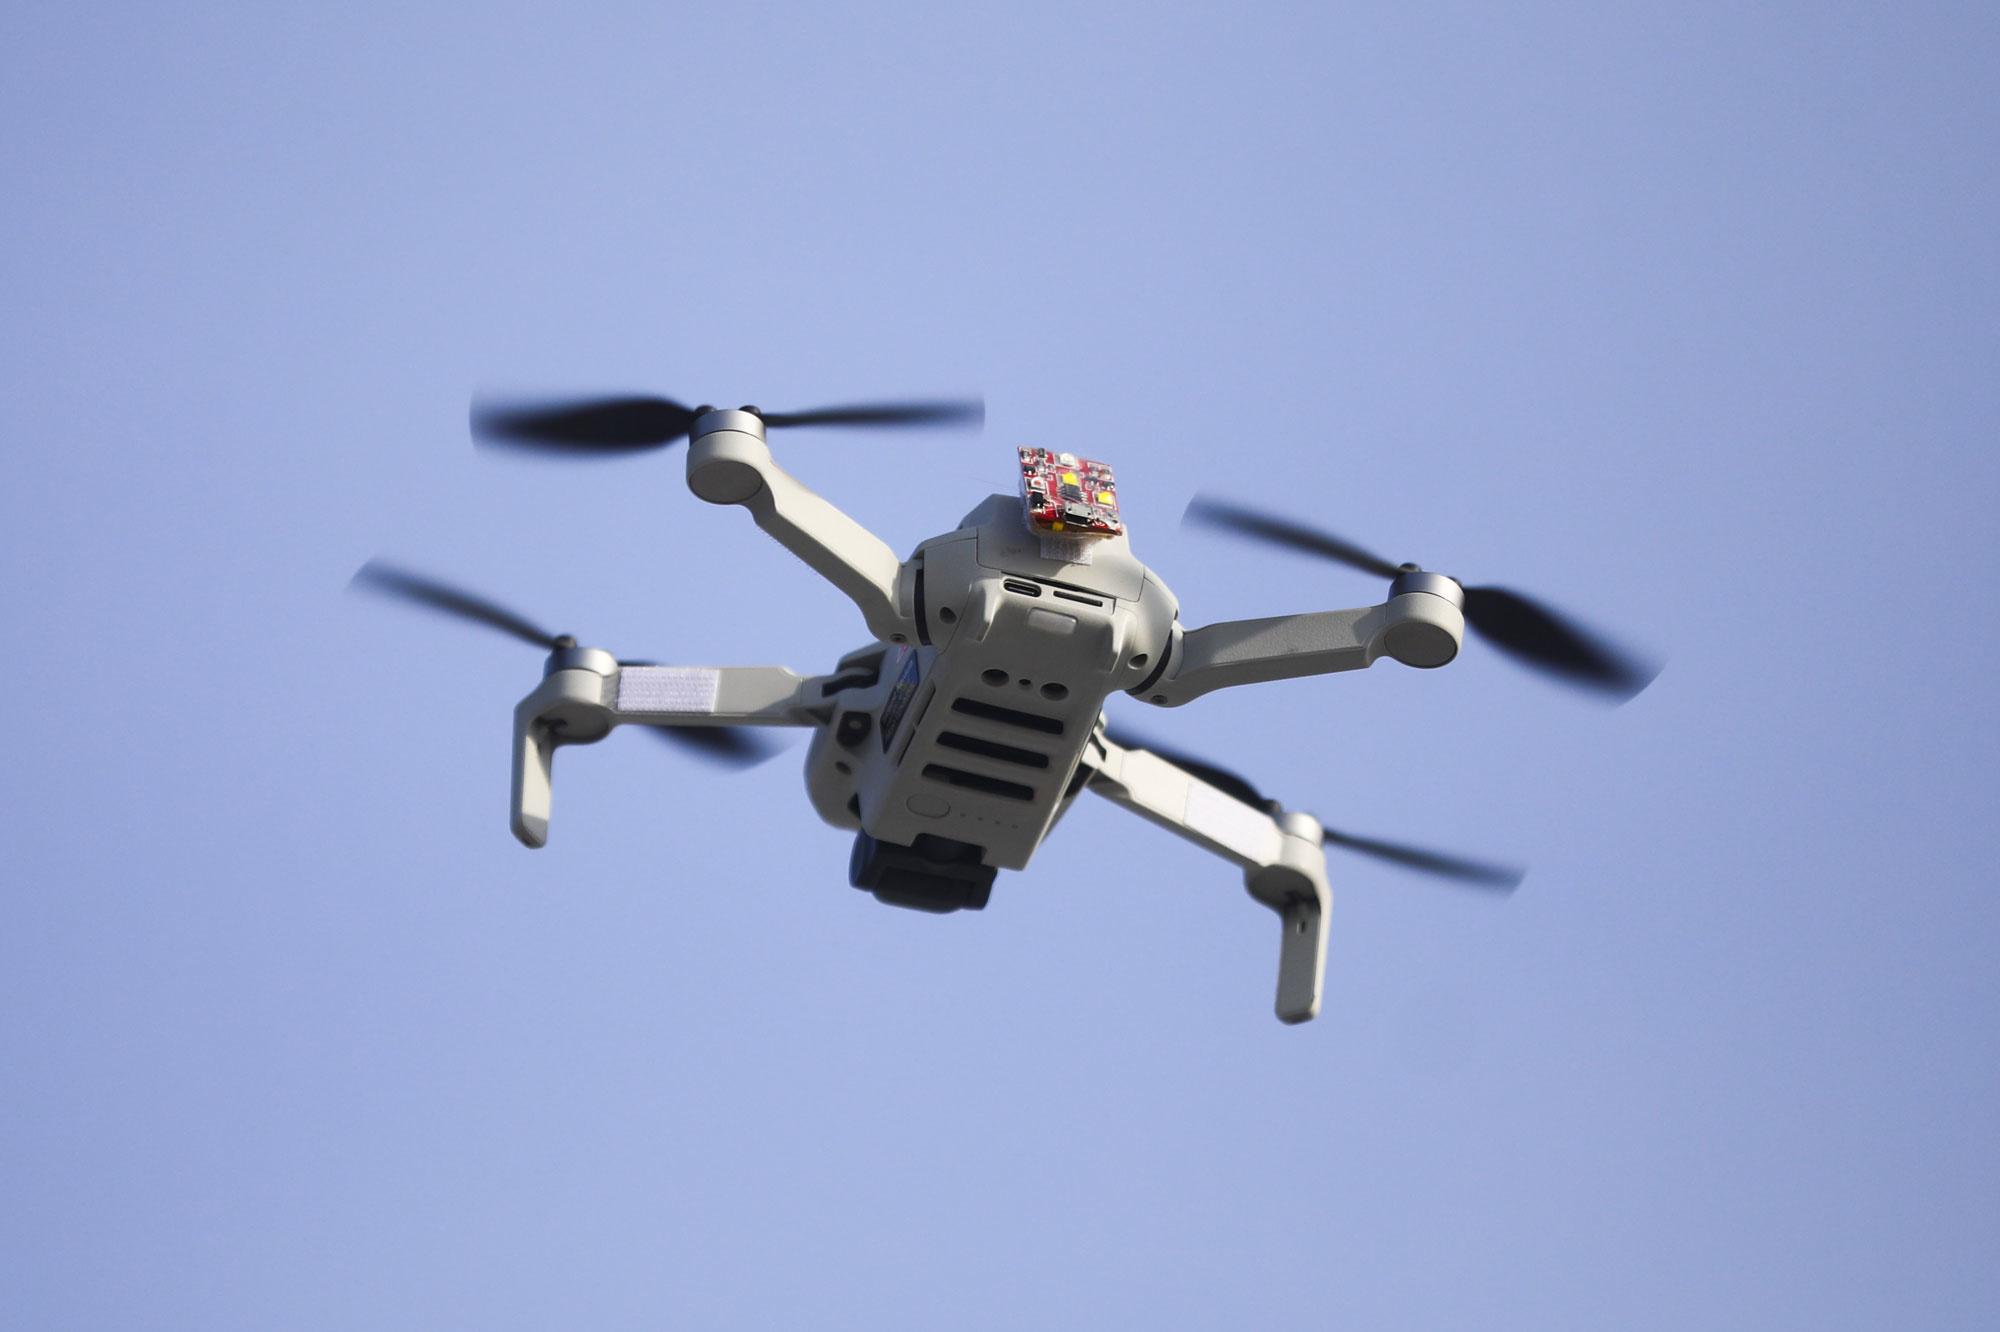 Signaal Kleren buiten gebruik MediaMarkt en Bol.com stoppen verkoop drones van DJI wegens inzet in oorlog  Oekraïne